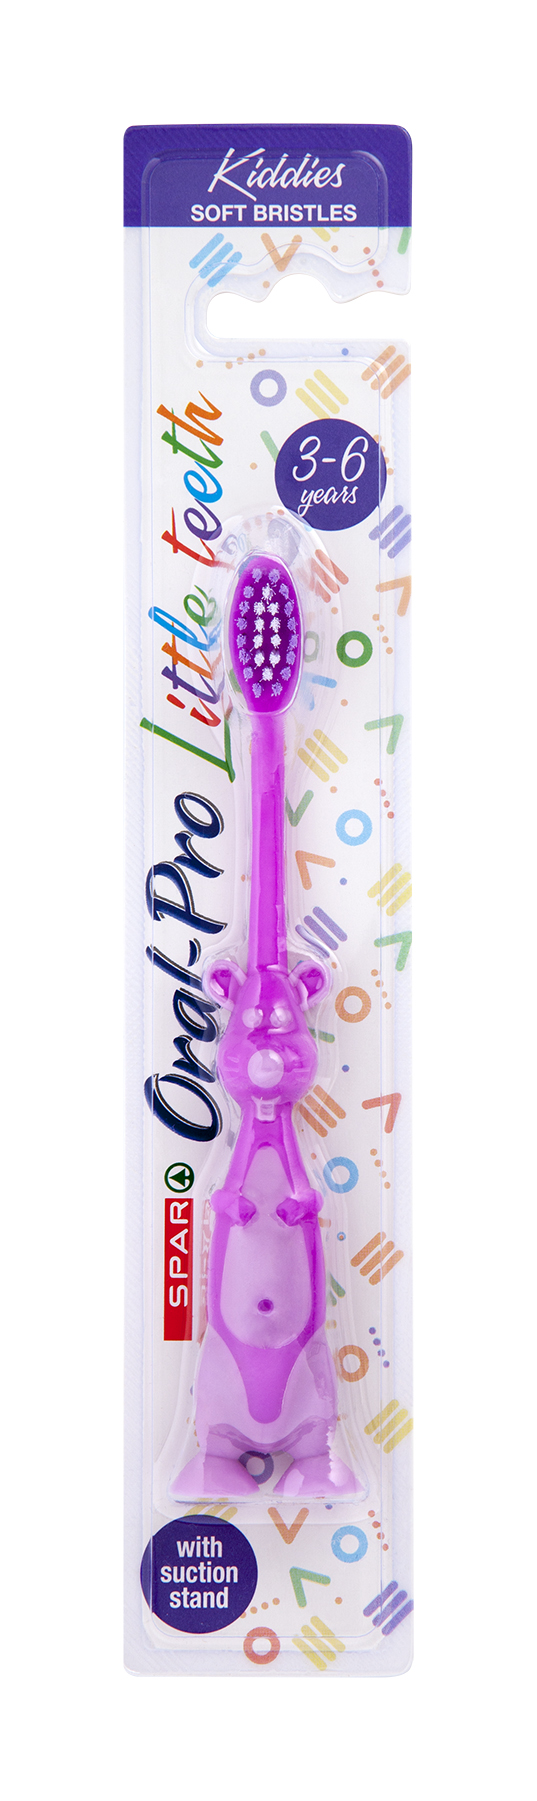 oral pro toothbrush kiddies - soft